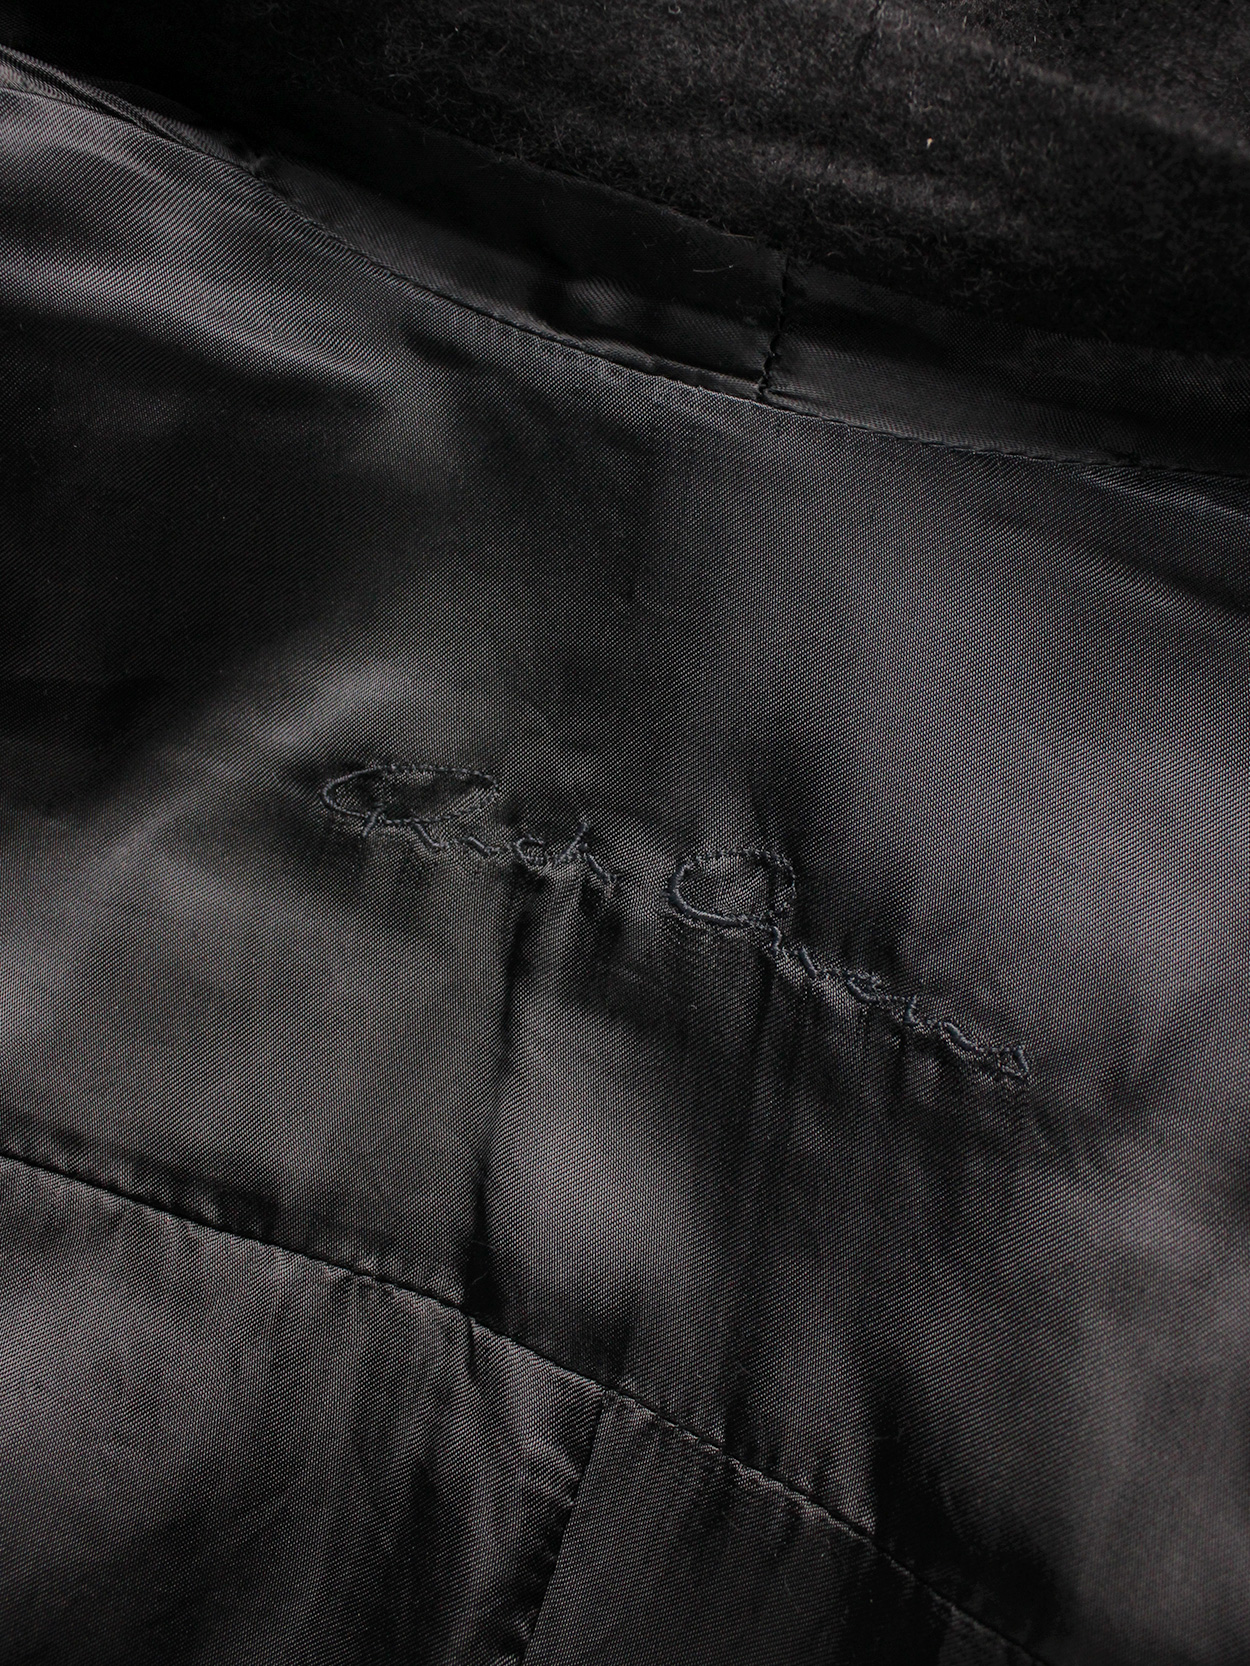 vaniitas Rick Owens black minimalist blazer with tailored wider hips 0090